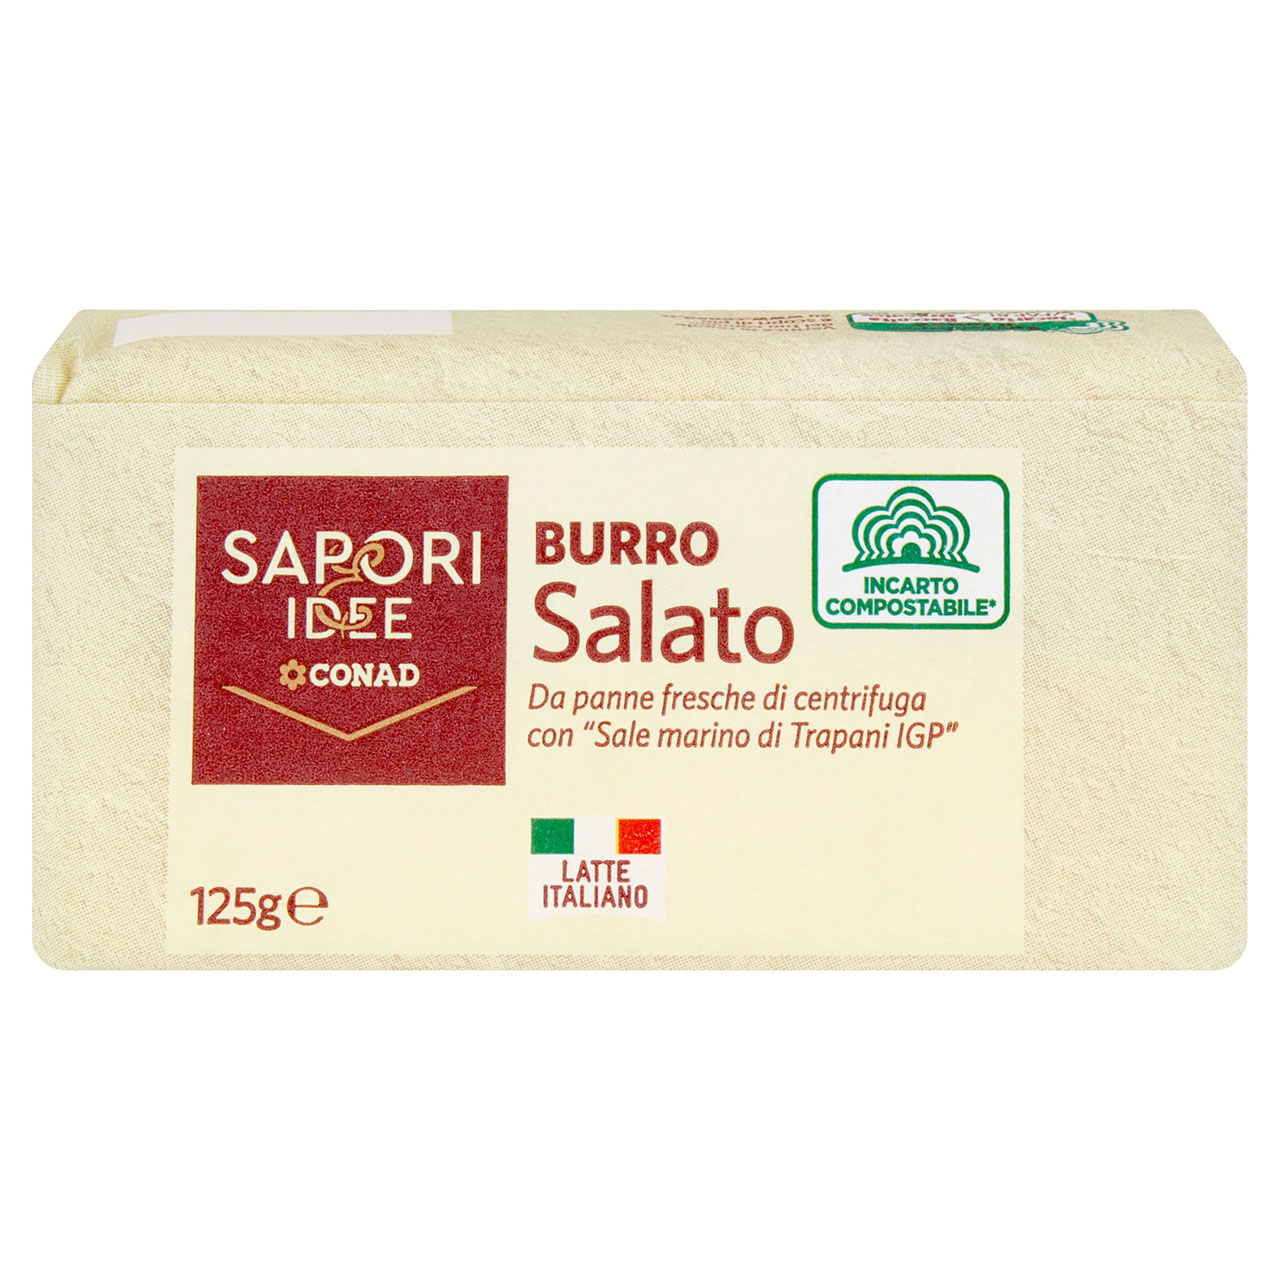 Burro Salato 125 g Sapori & Idee Conad